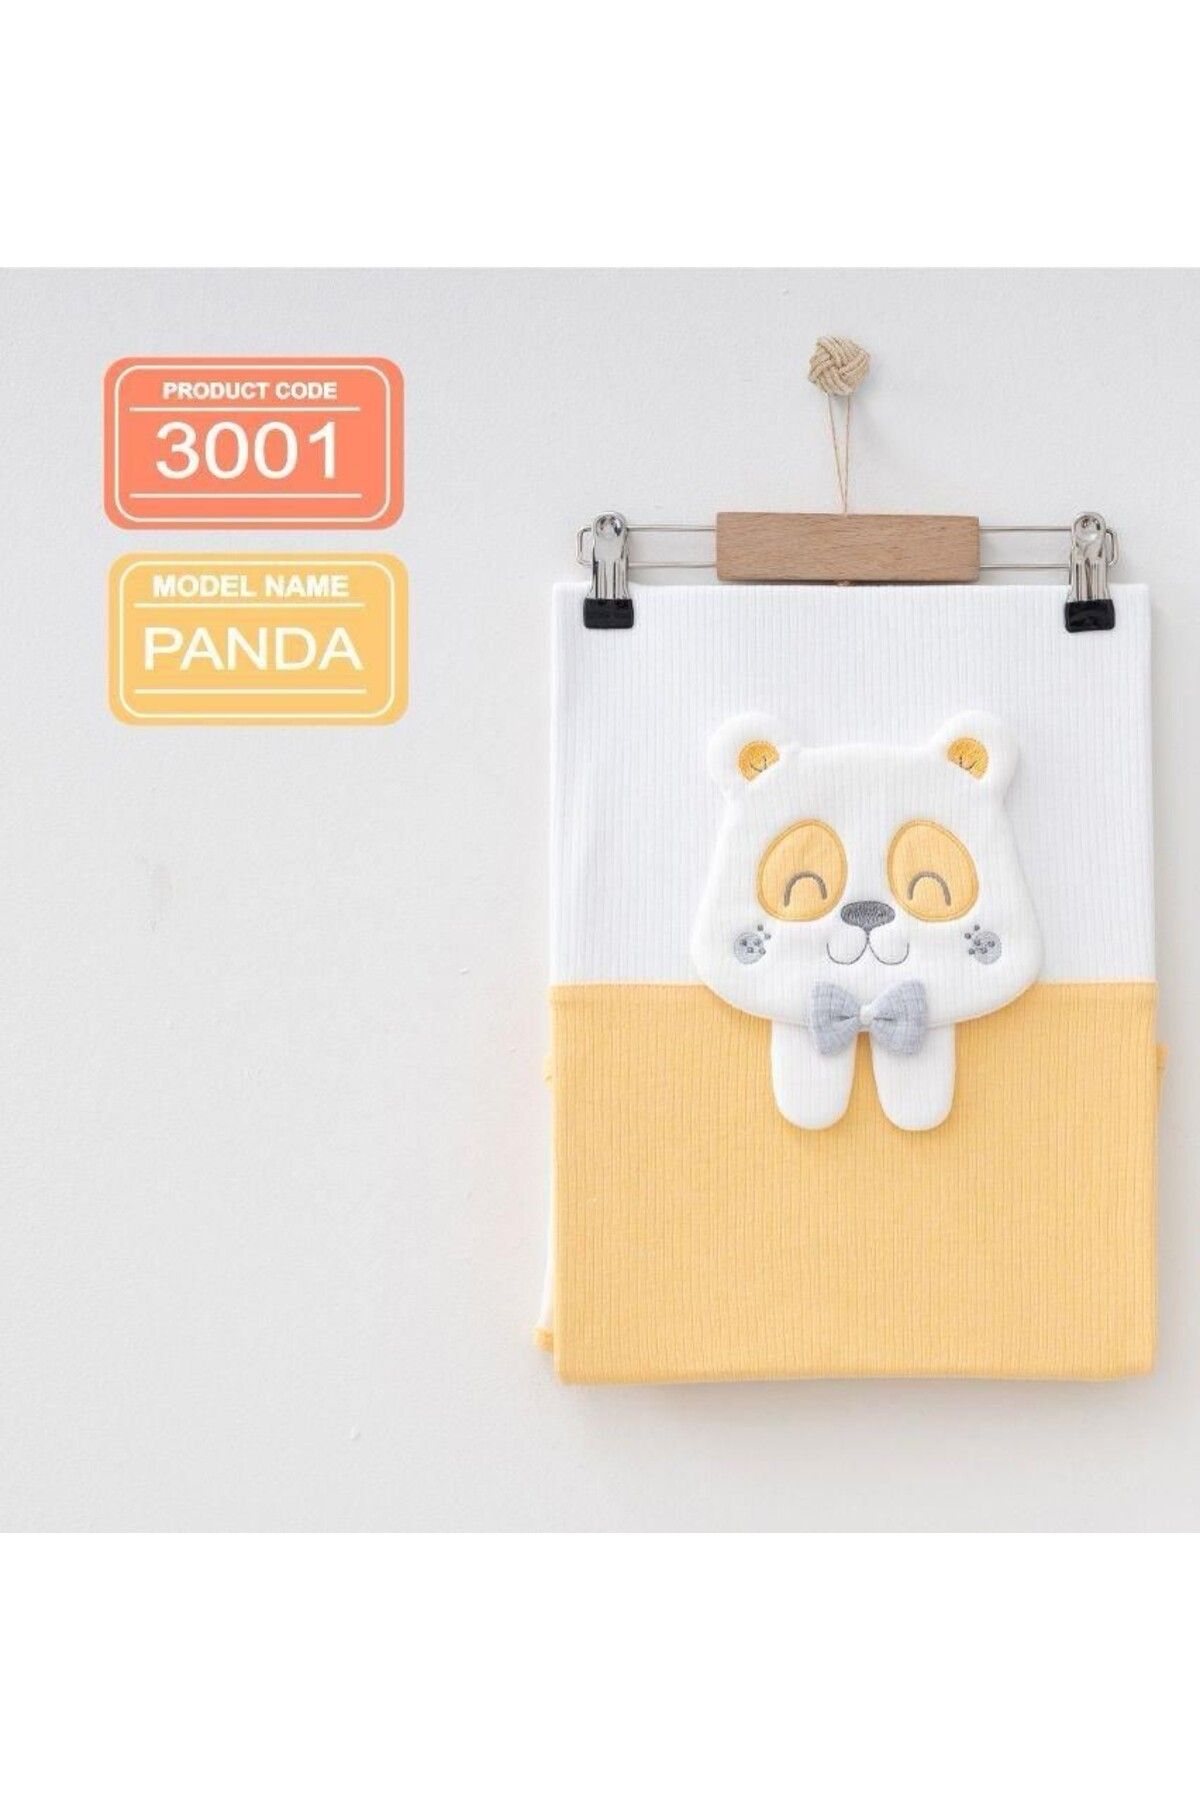 MORA BABY KİDS Panda Nakışlı Bebek Battaniyesi